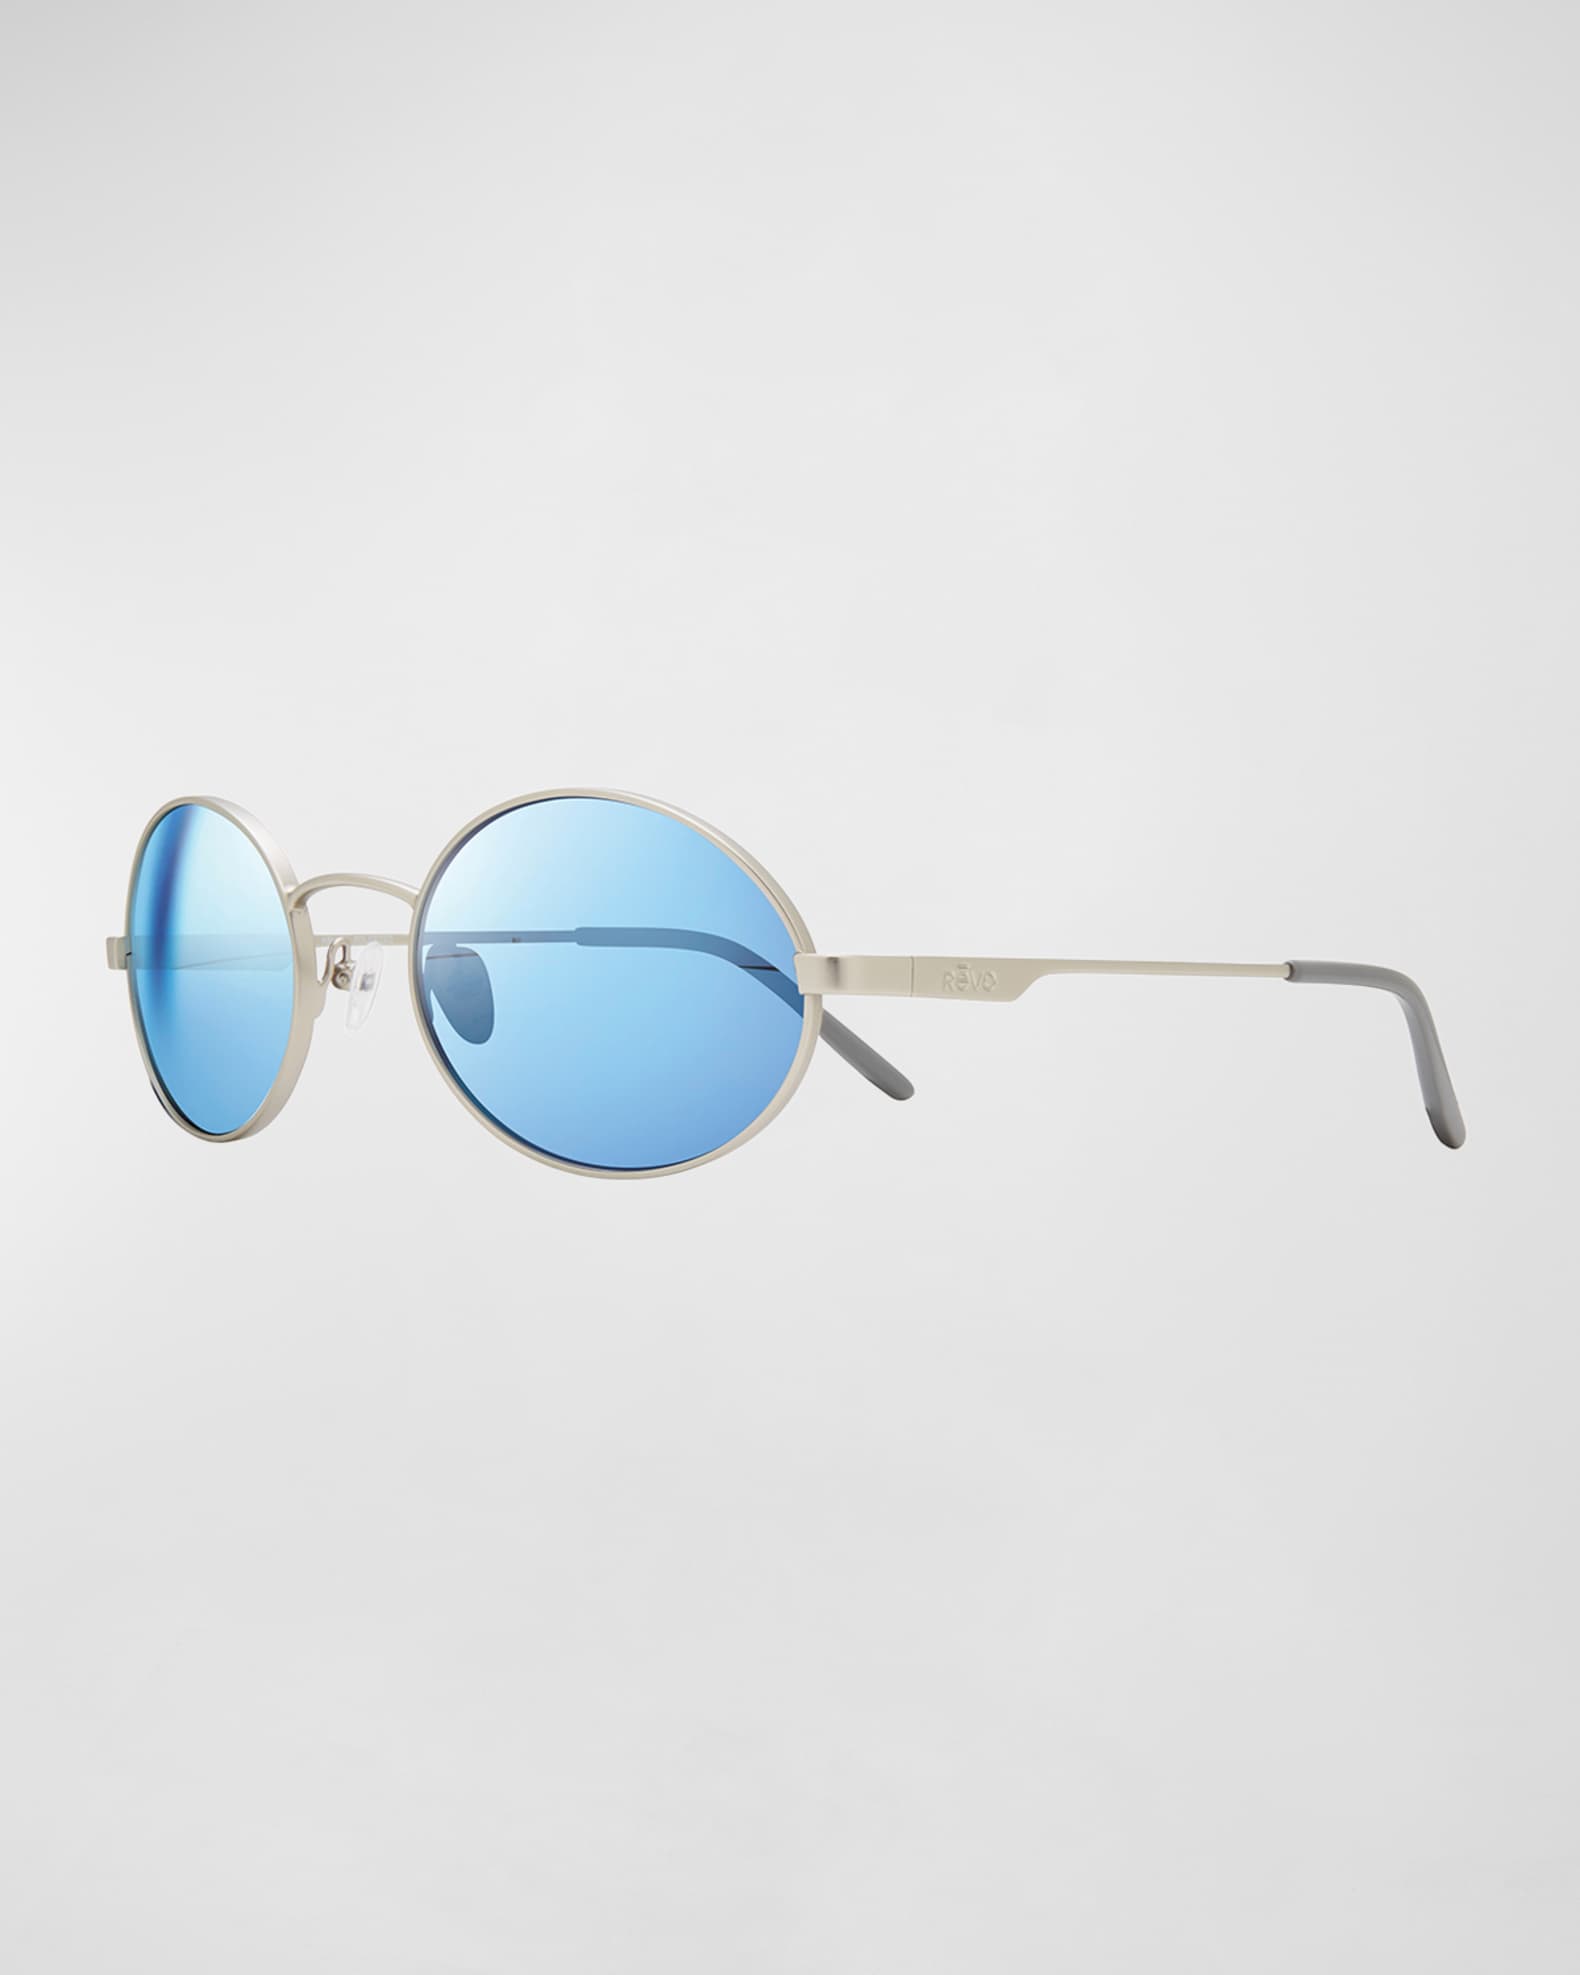 neiman marcus Mens Blue Sunglasses at Neiman Marcus